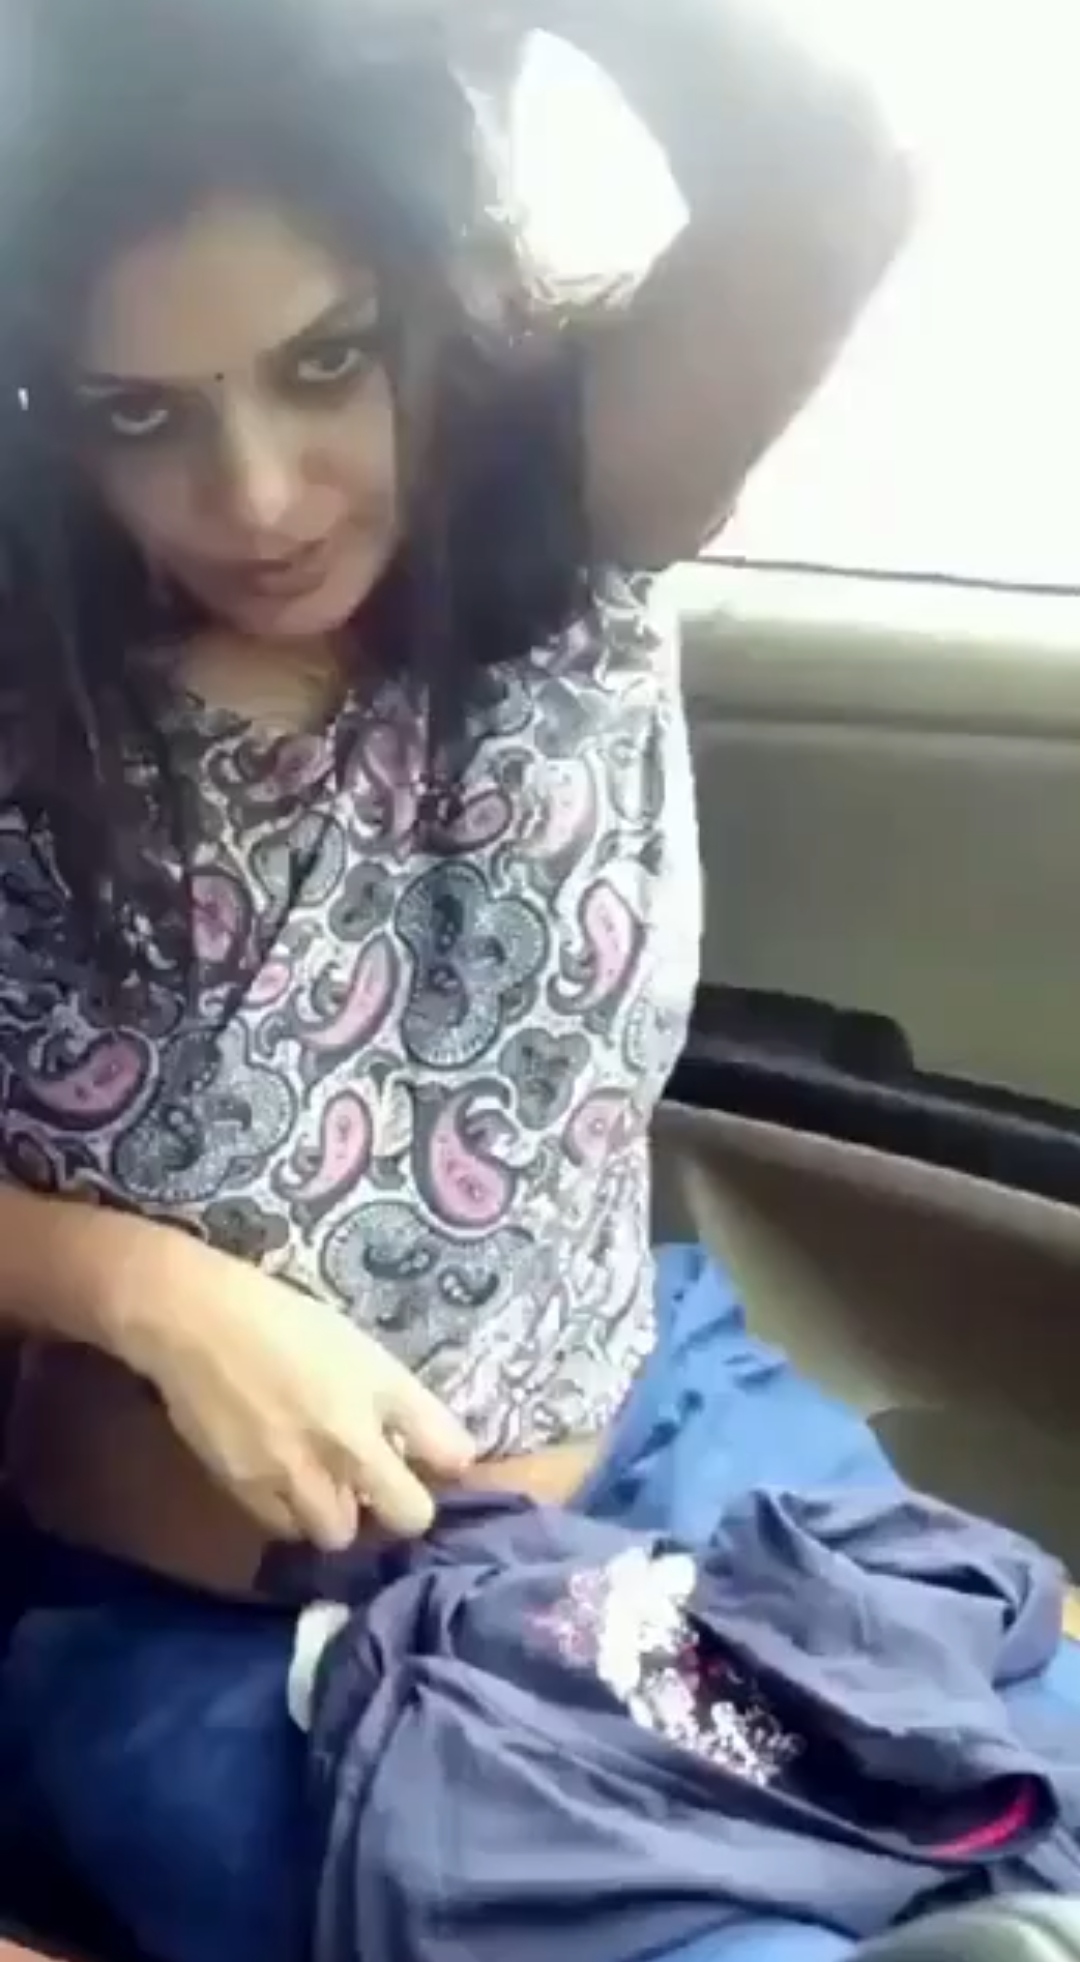 Aparna in the car